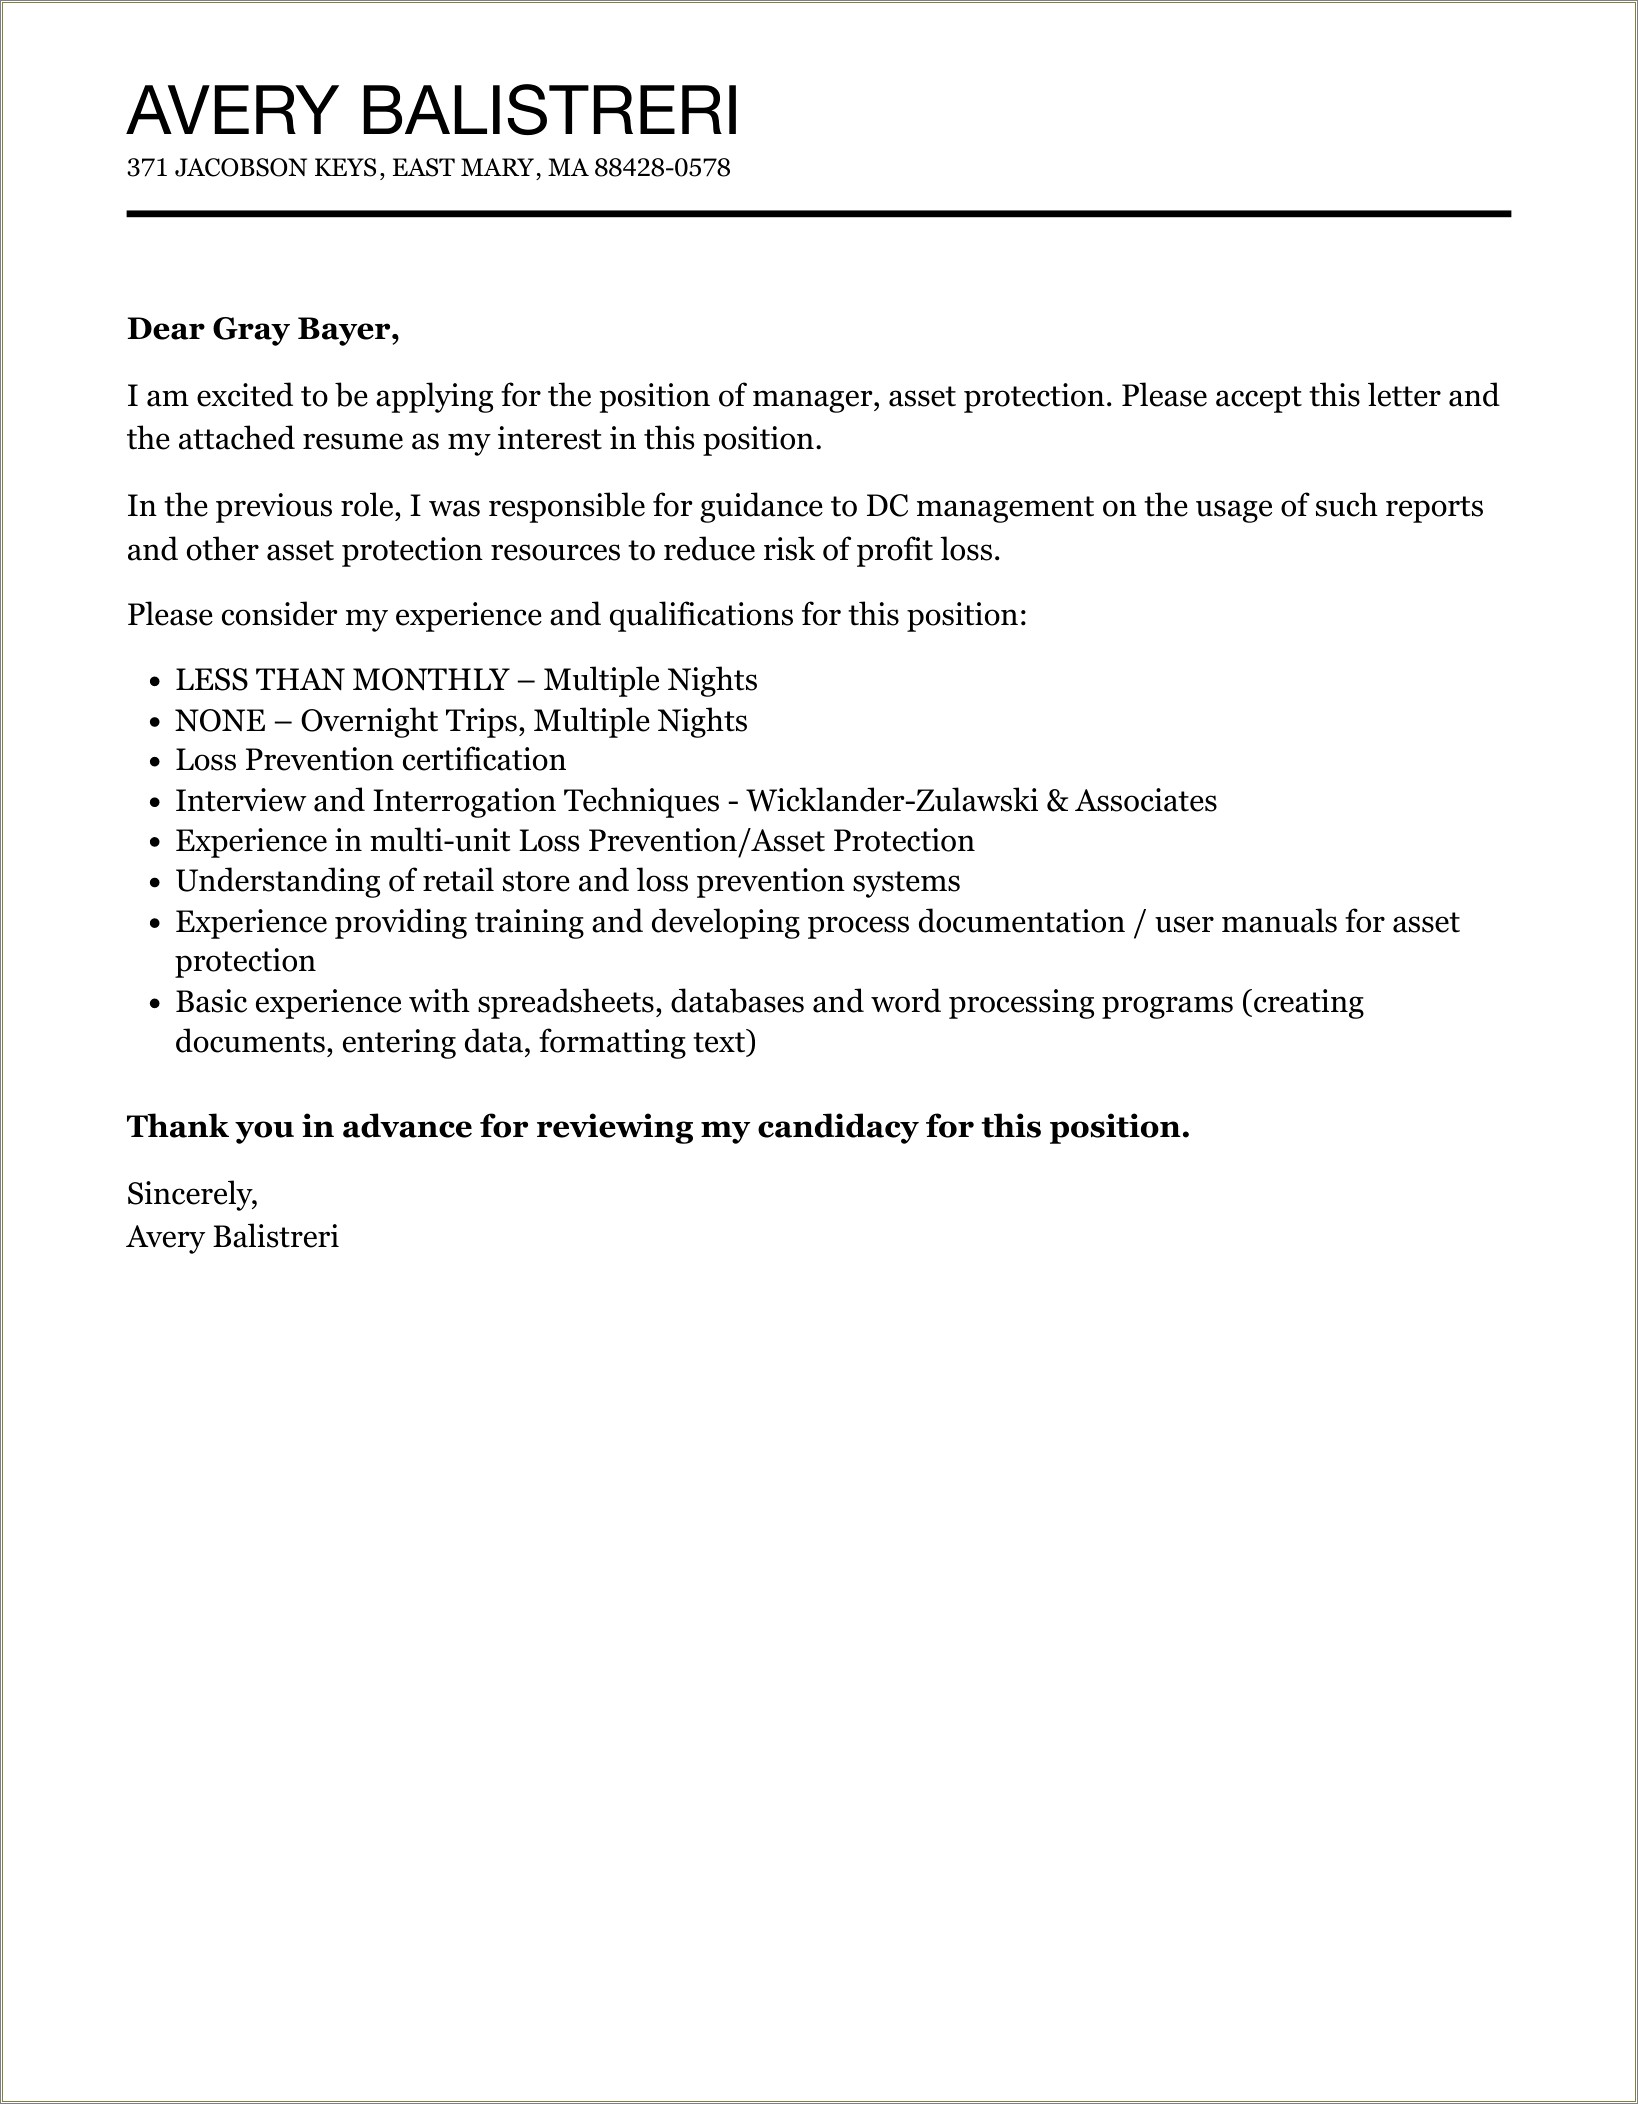 Resume Cover Letter For Loss Prevention